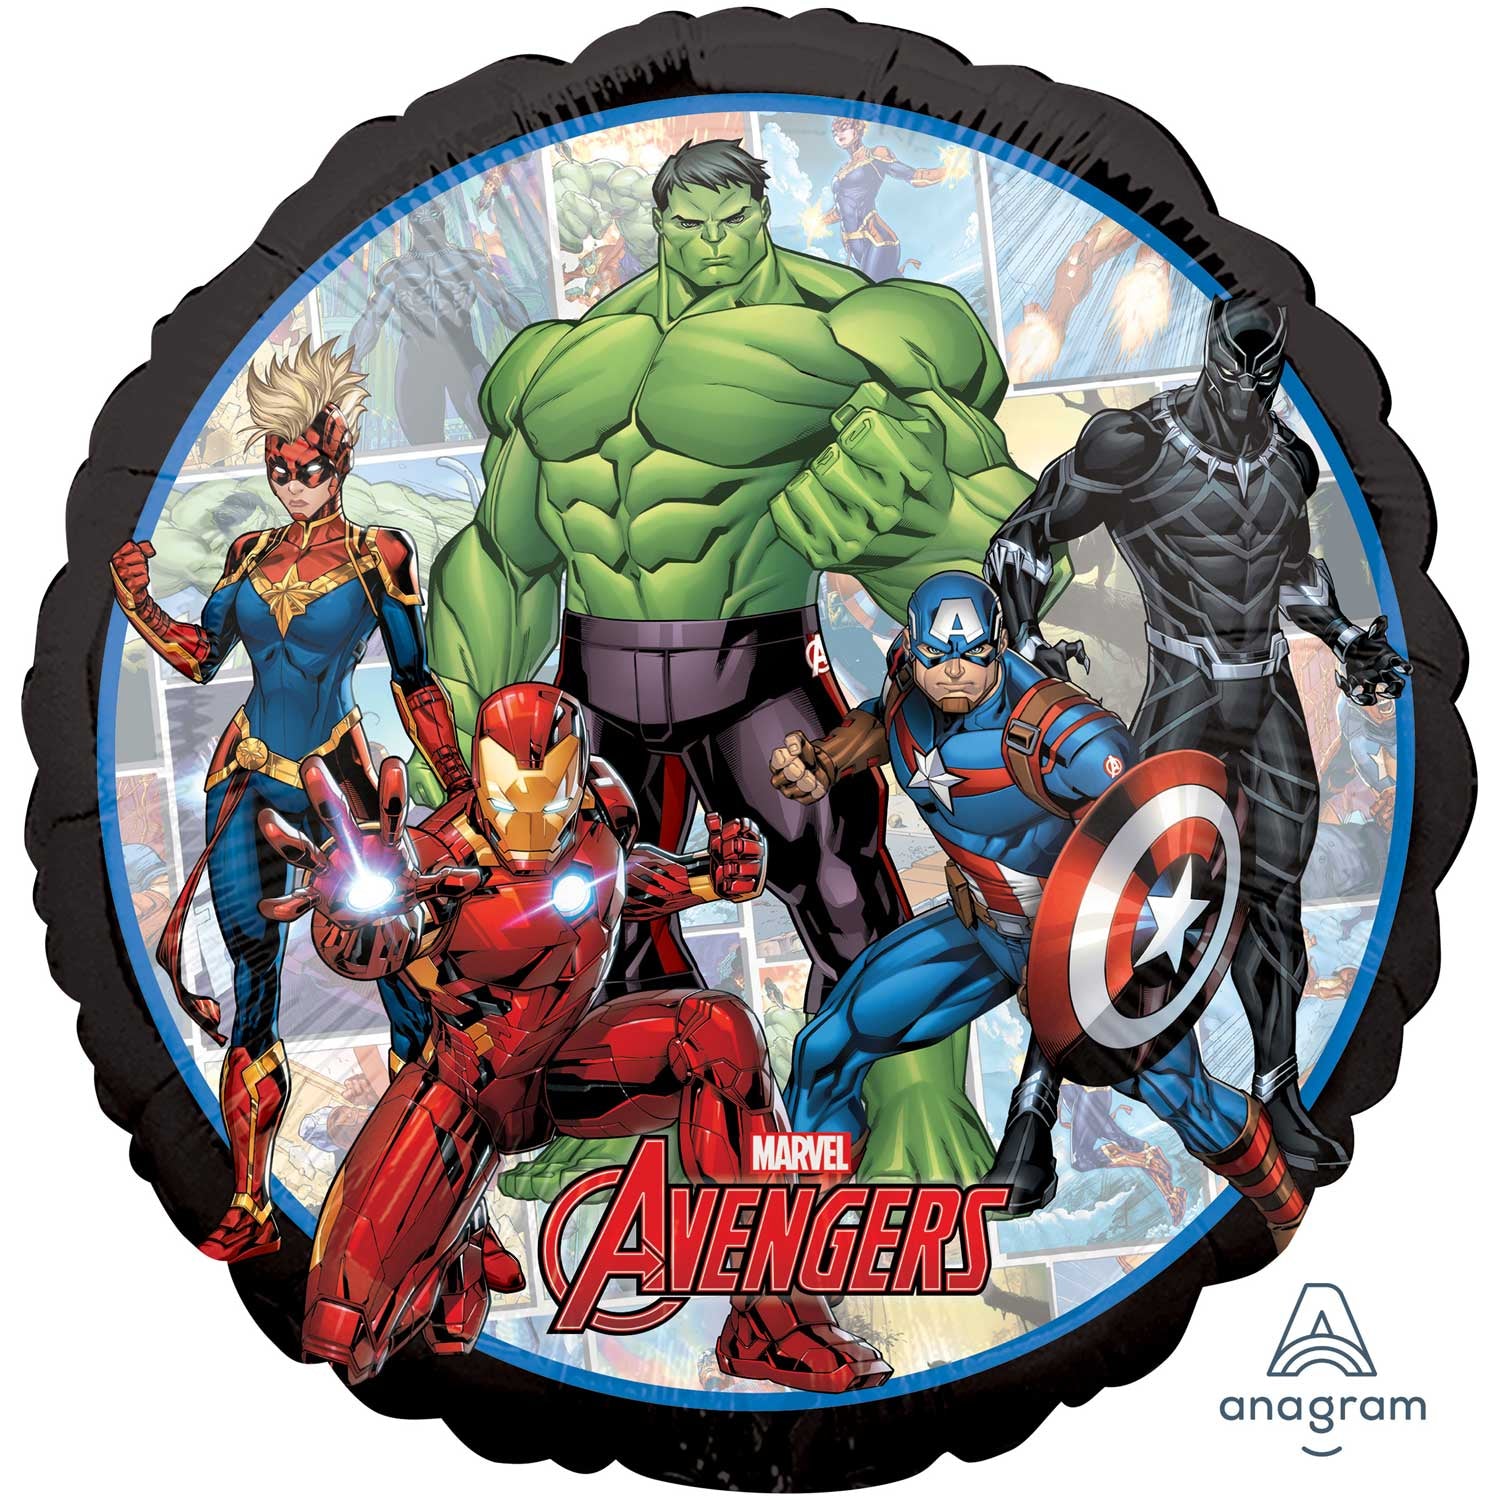 Anagram Avengers Marvel Powers Unite Standard Foil